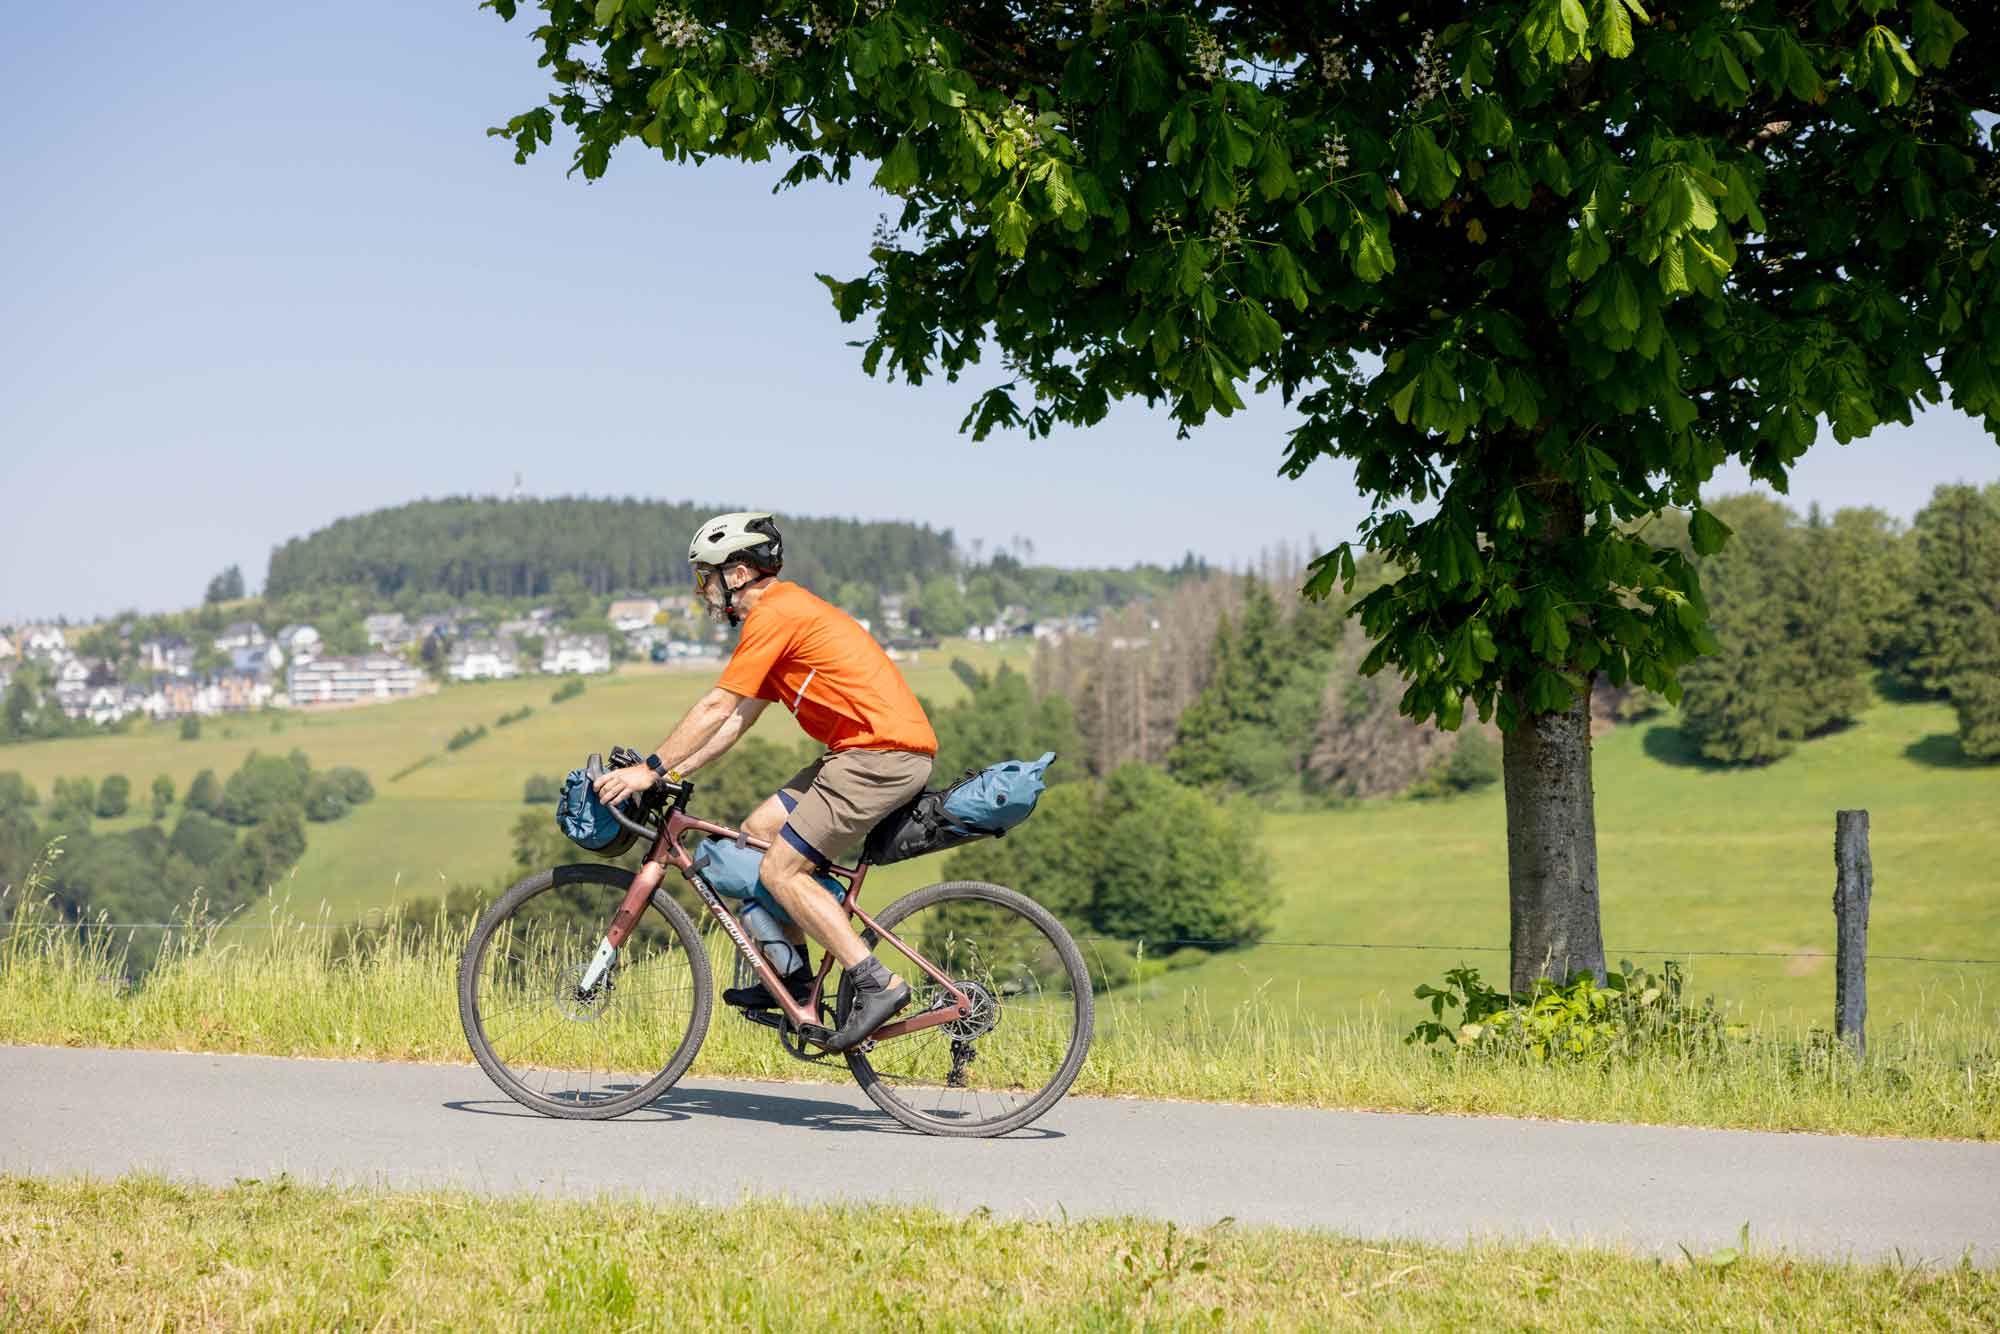 Das sauerland ist ein prima pflaster für unseren deuter bikepacking taschen test!